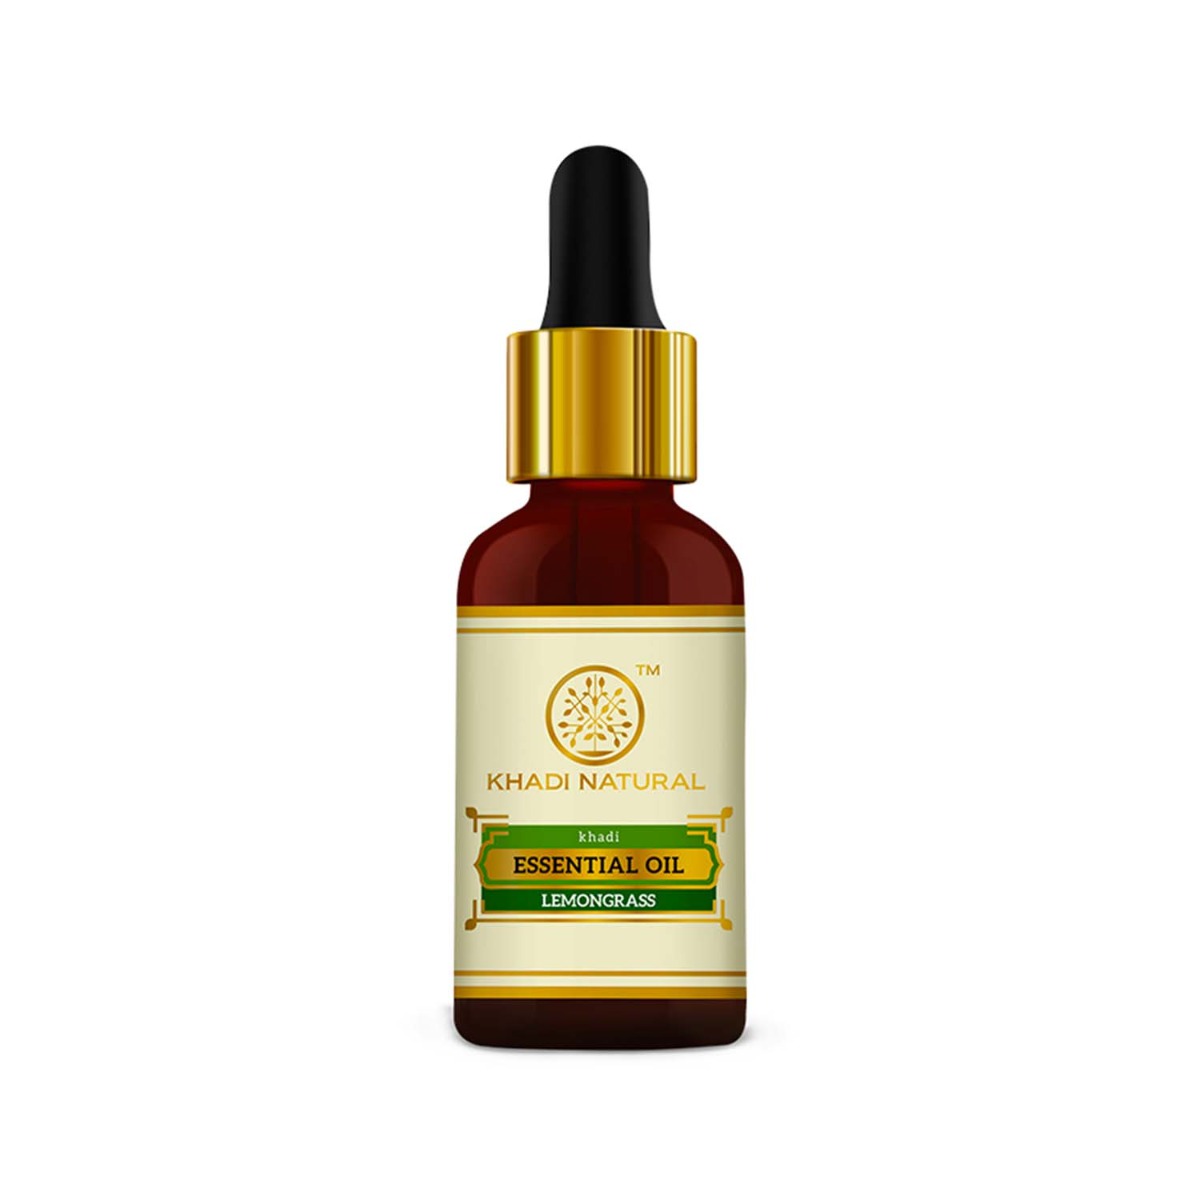 Khadi Natural Lemongrass Essential Oil, 15ml